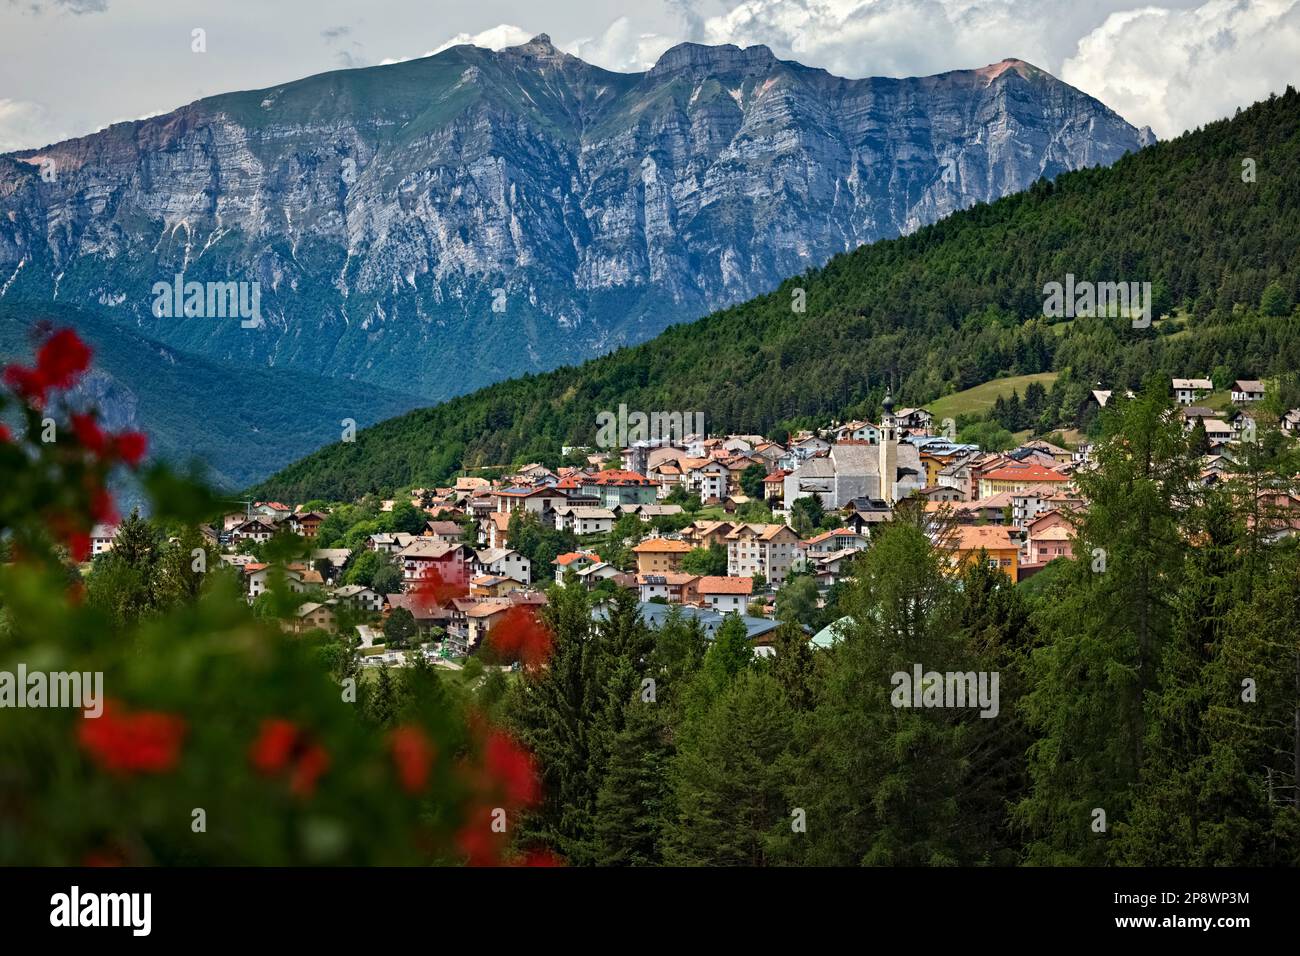 Die Stadt Folgaria und Mount Cornetto im Hintergrund. Alpe Cimbra, Trentino, Italien. Stockfoto